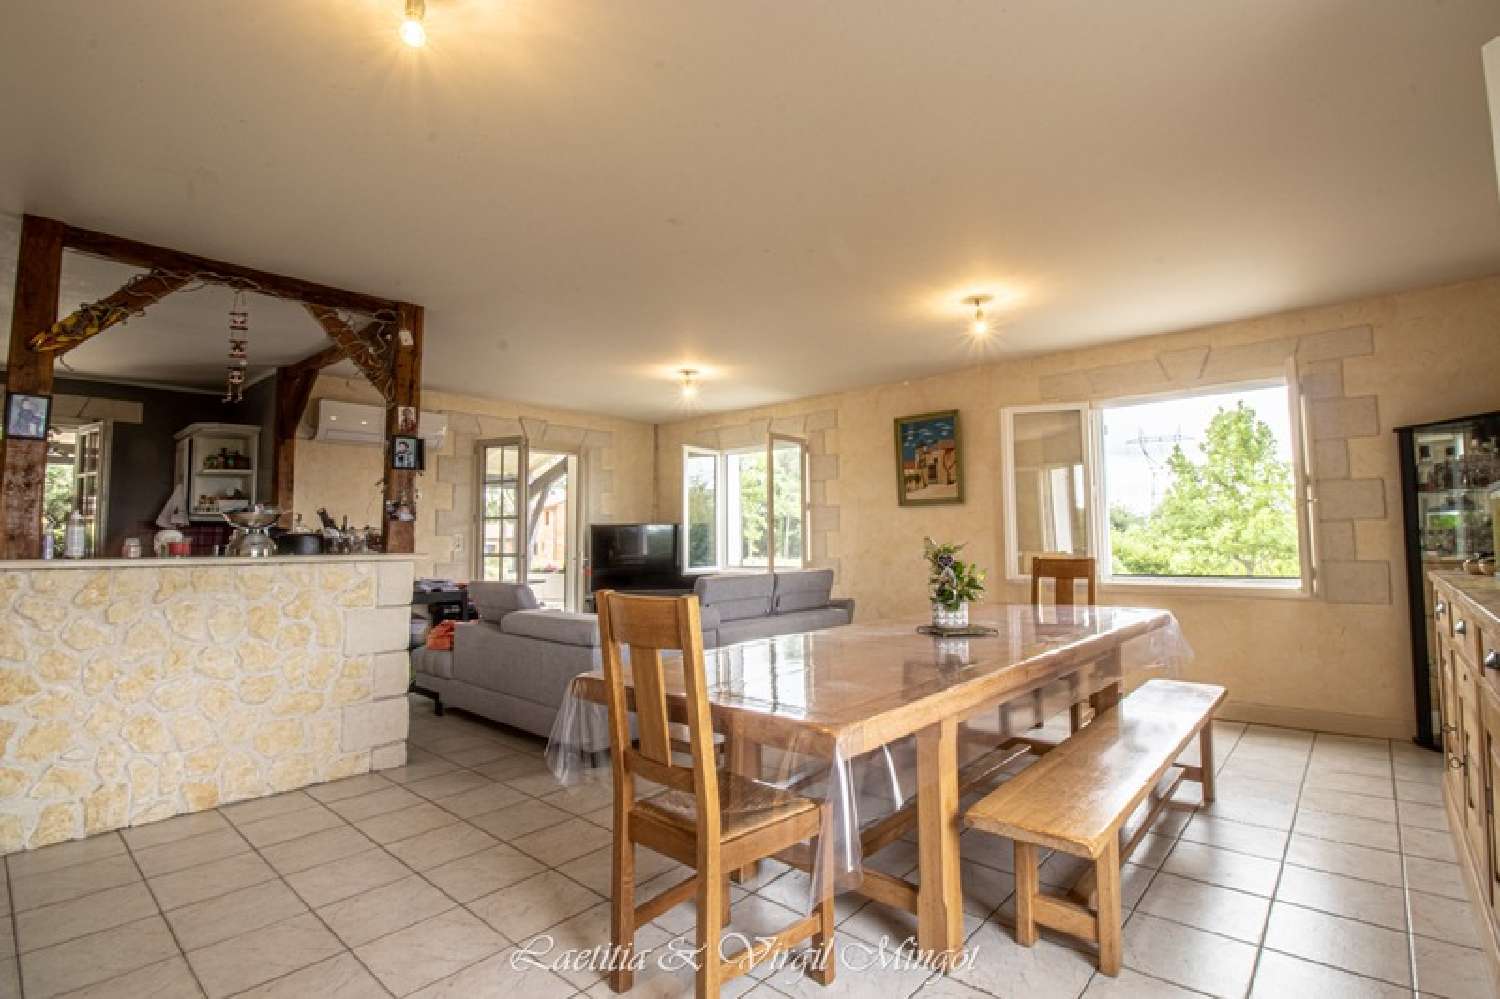  à vendre maison Chantérac Dordogne 4